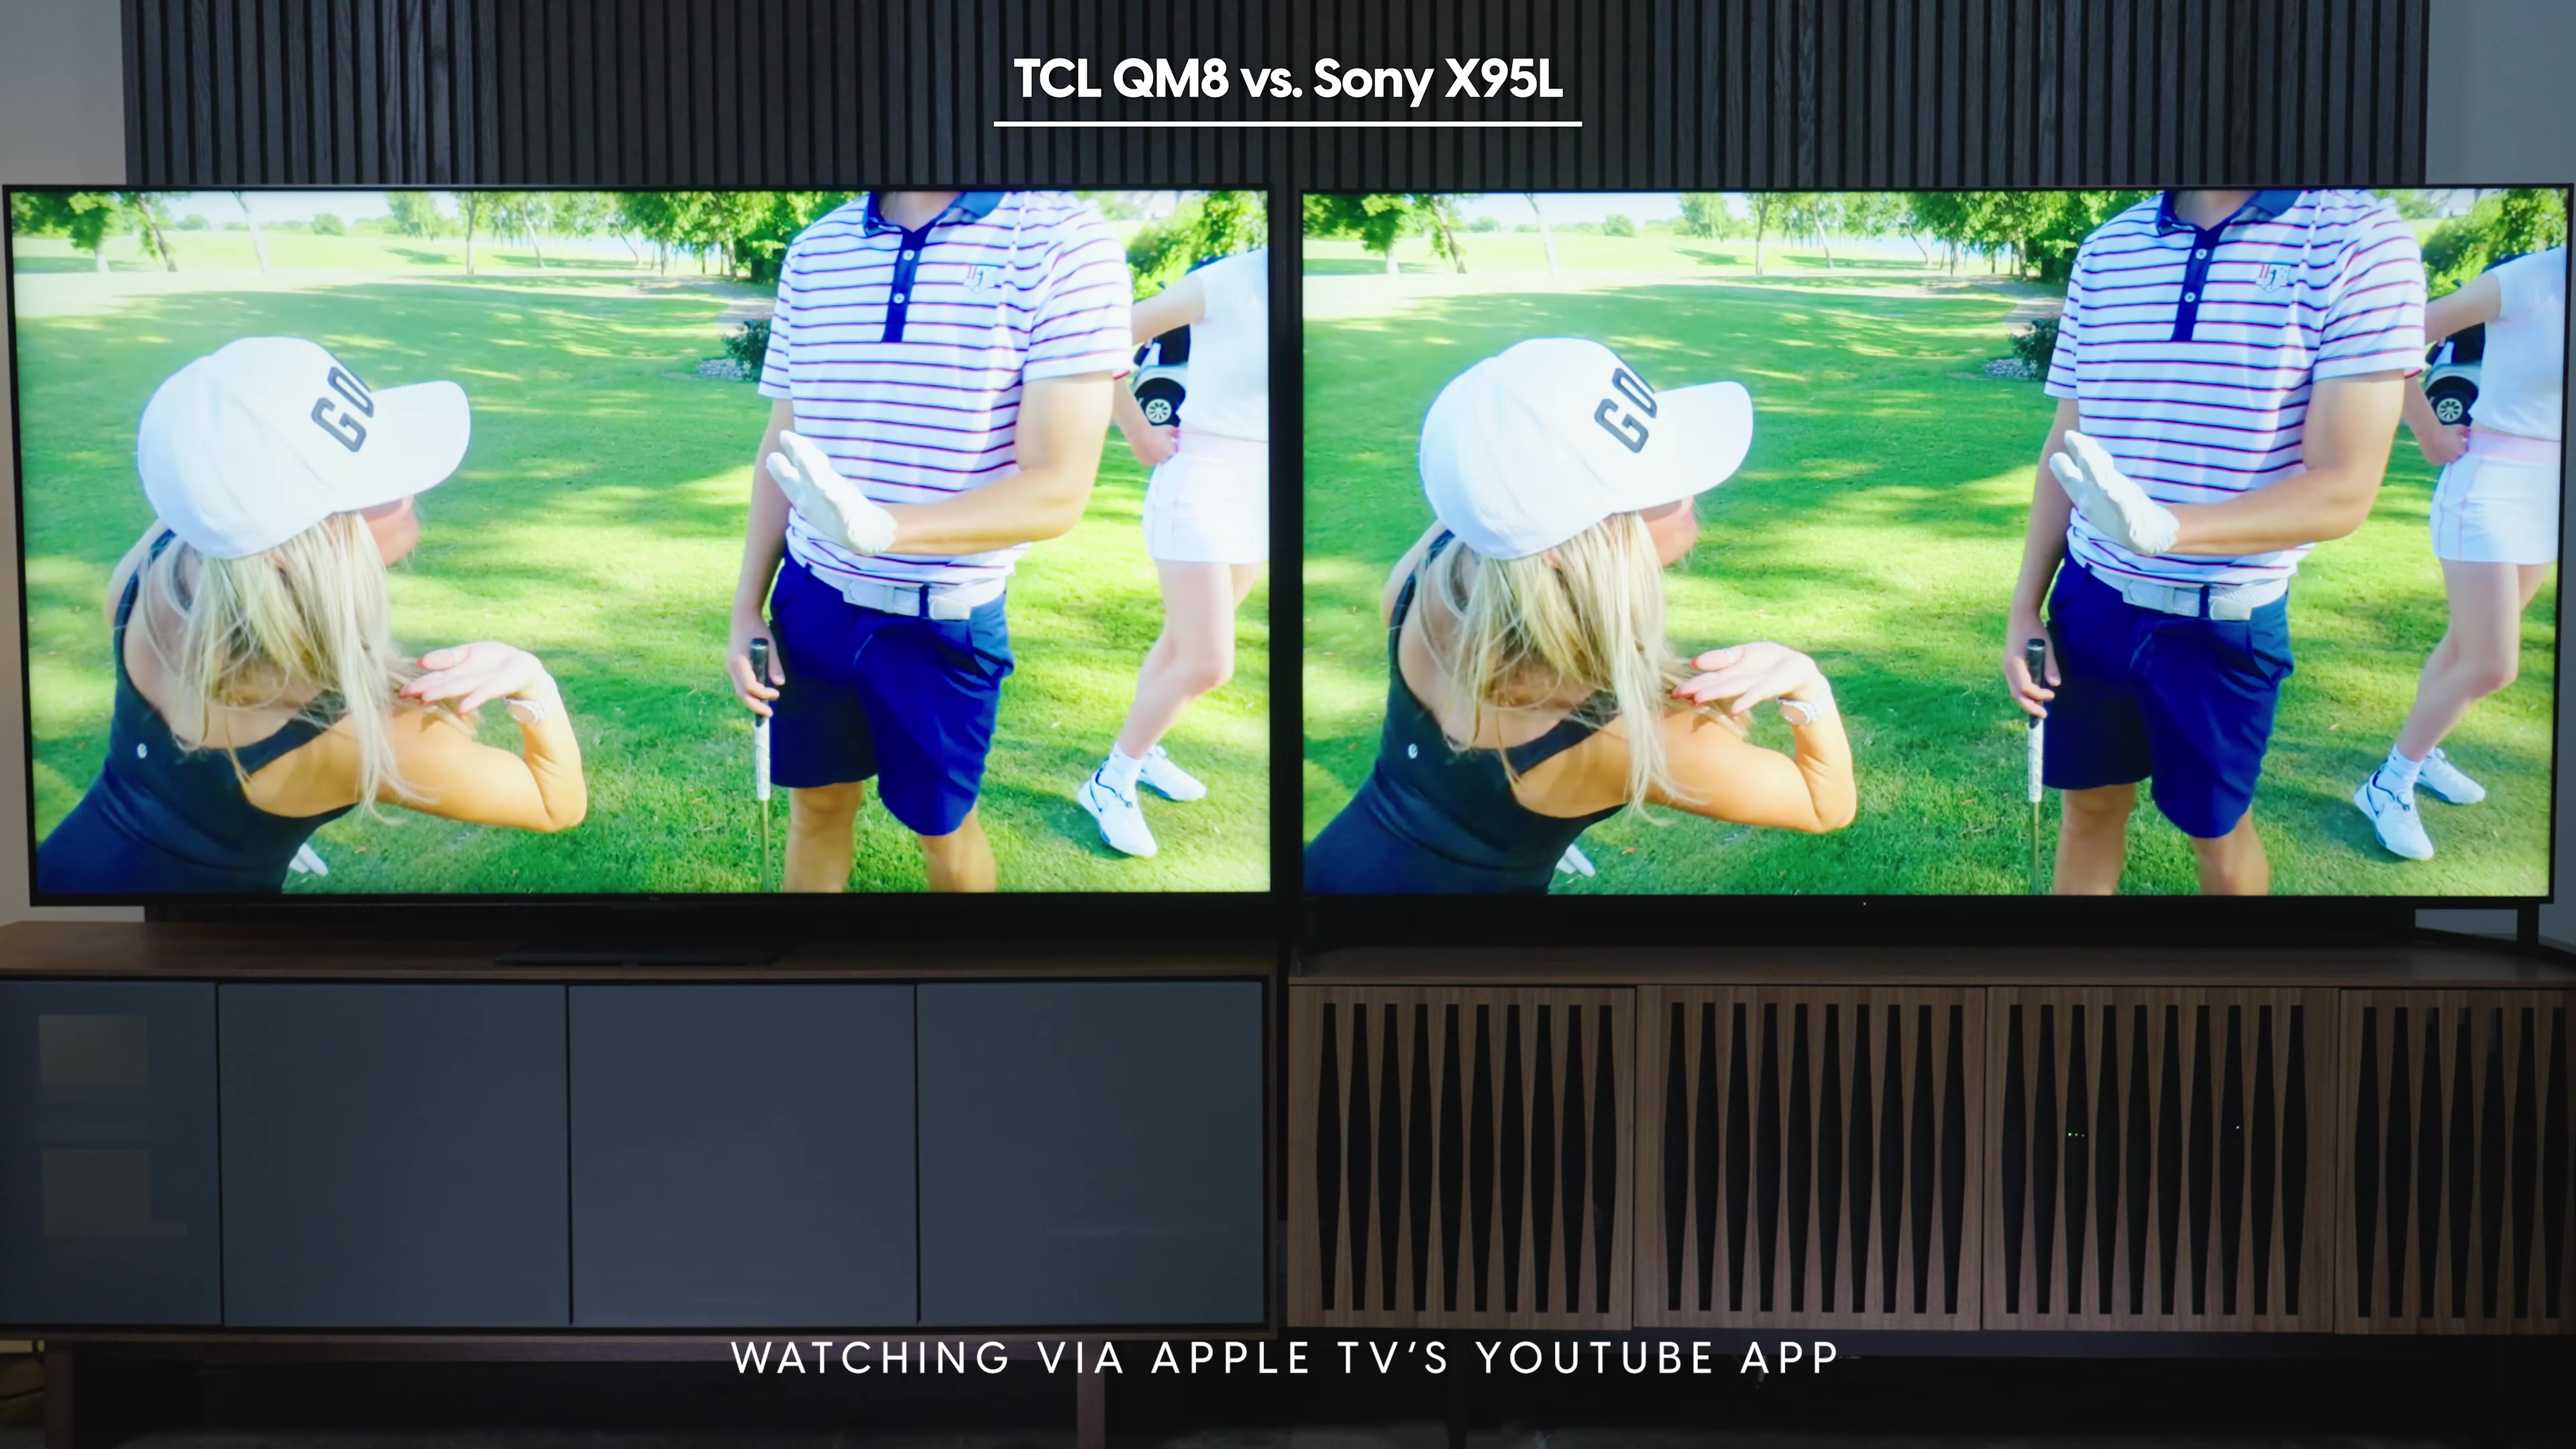 सोनी ब्राविया X95L बनाम TCL QM8 पर दिखाए गए ऐप्पल टीवी यूट्यूब ऐप पर गुड गुड गोल्फ चैनल के स्क्रीनग्रैब की एक साथ तुलना।